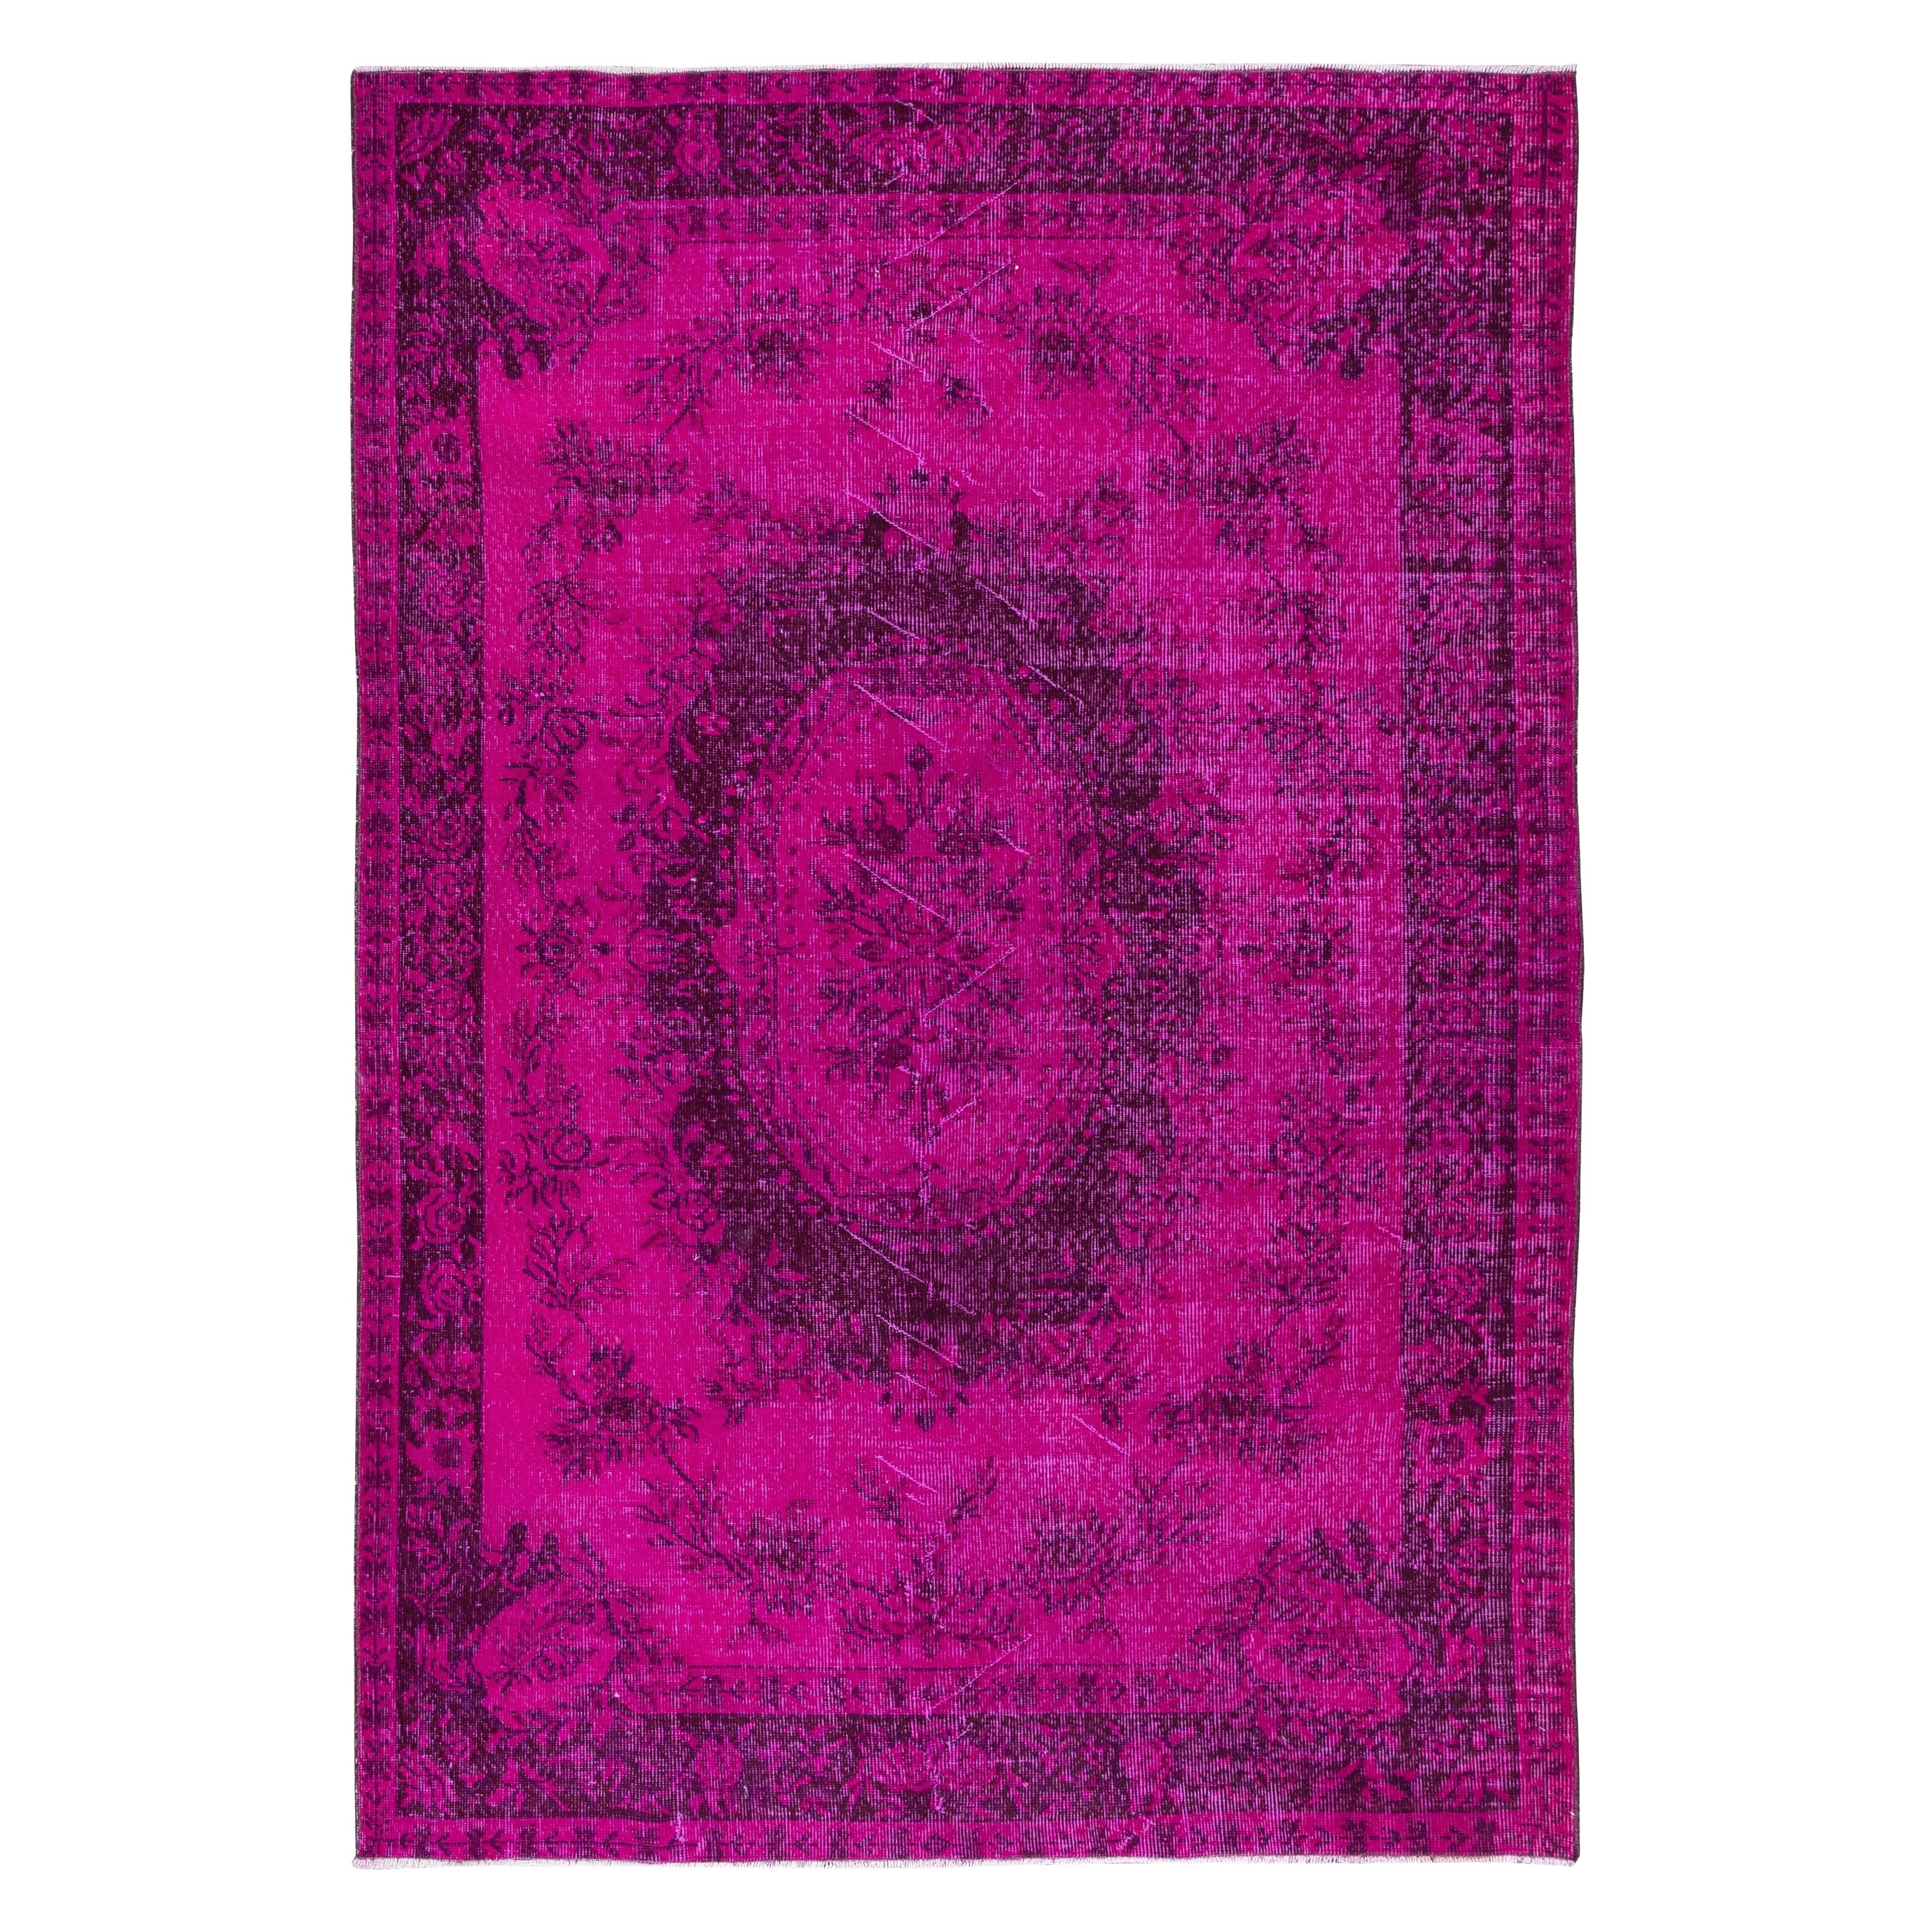 6x8.6 Ft Hot Pink Aubusson Inspired Rug for Modern Interiors, Handmade in Turkey (Tapis d'inspiration Aubusson rose vif pour intérieurs modernes, fait à la main en Turquie)